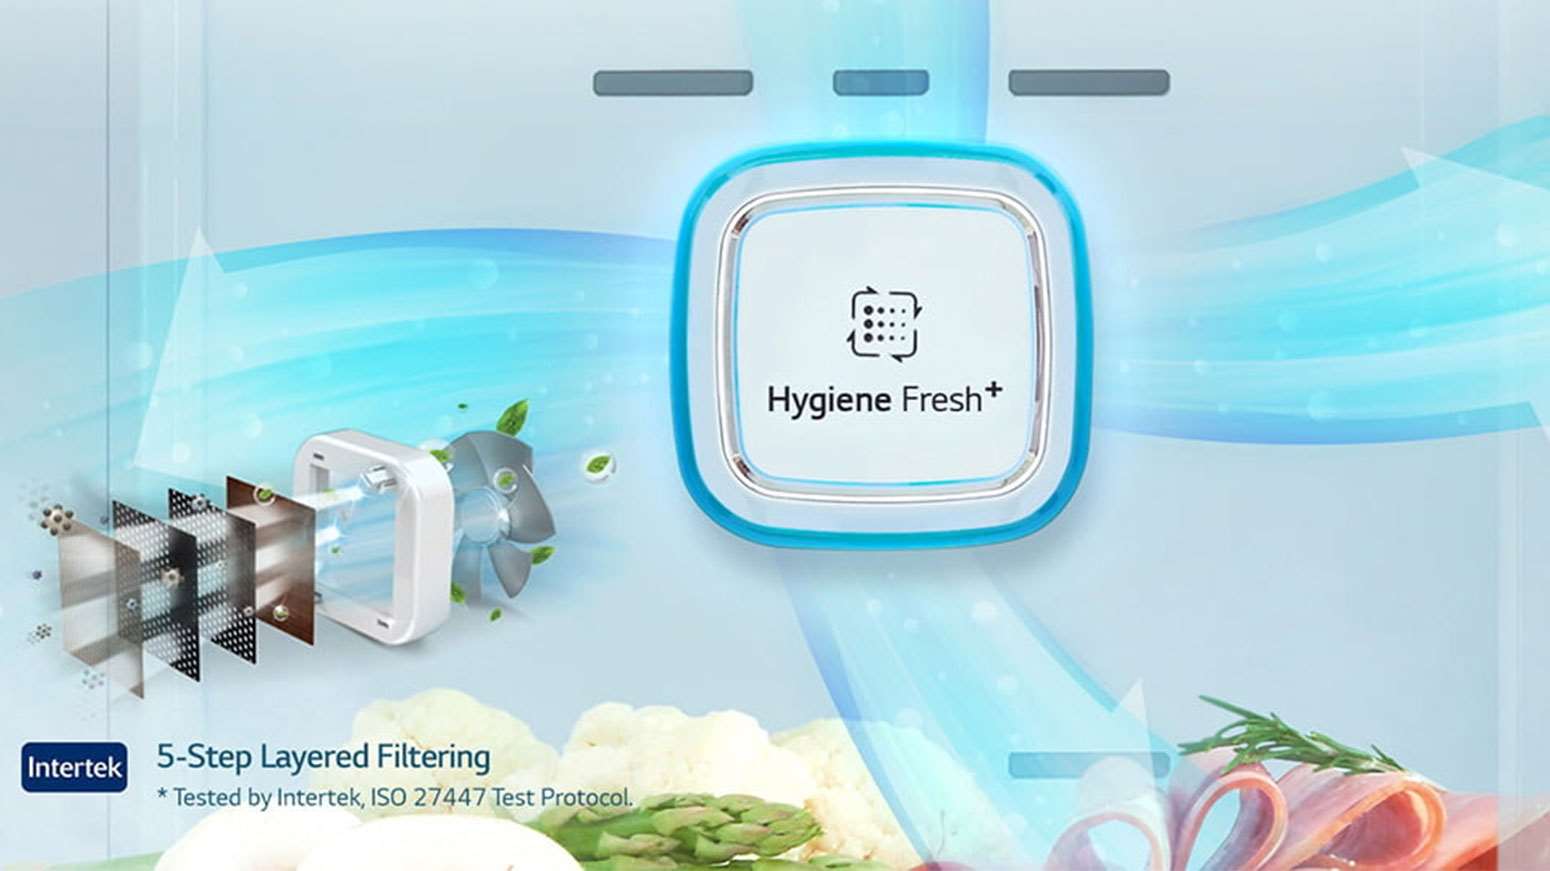 بهداشت مواد غذایی به کمک فیلتر بهداشتی Hygiene FRESH+